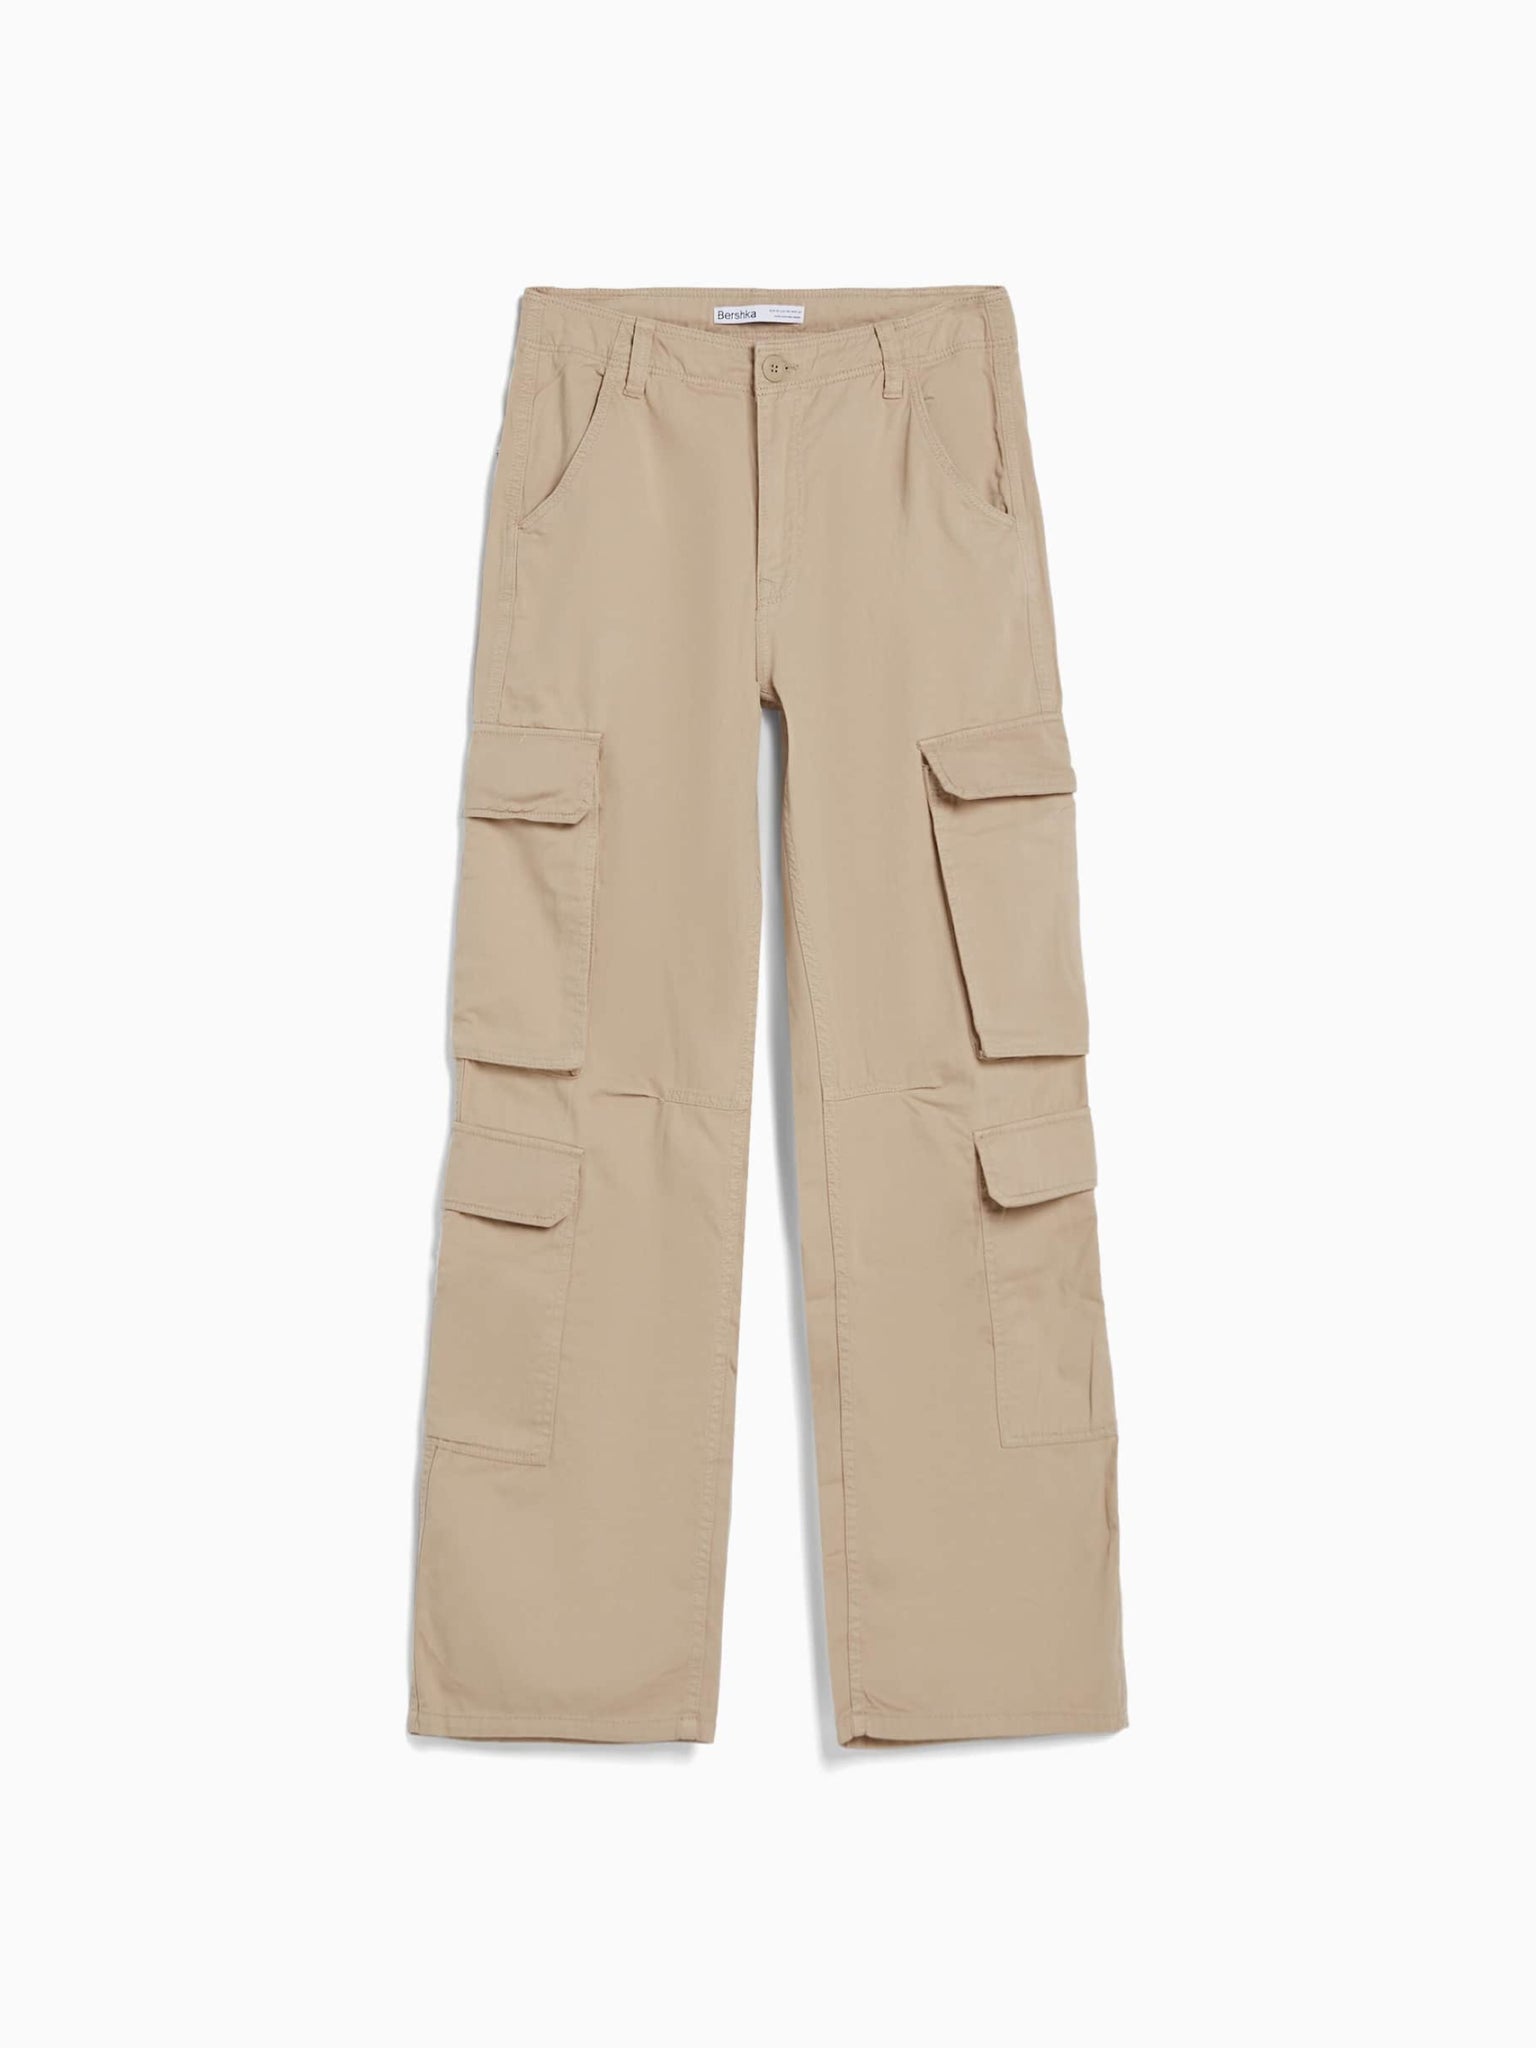 Adjustable multi-pocket twill cargo pants